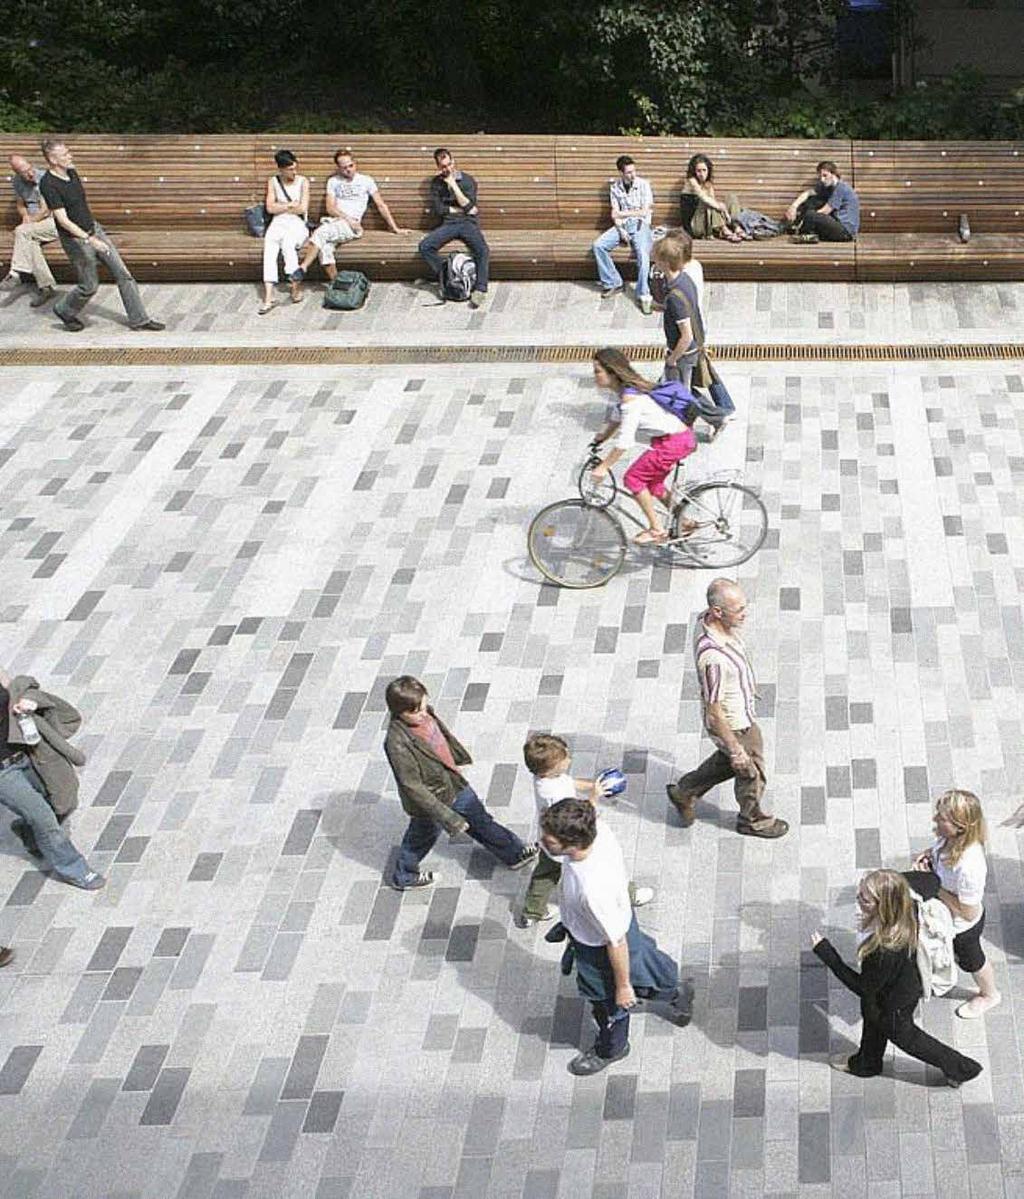 New Road, Brighton New Road är ett bra exempel på hur prioritering av kvaliteter för gående, cyklister Genomfartsgata och uppehållsaktiviteter blev mötesplats kan vara av avgörande betydelse för att